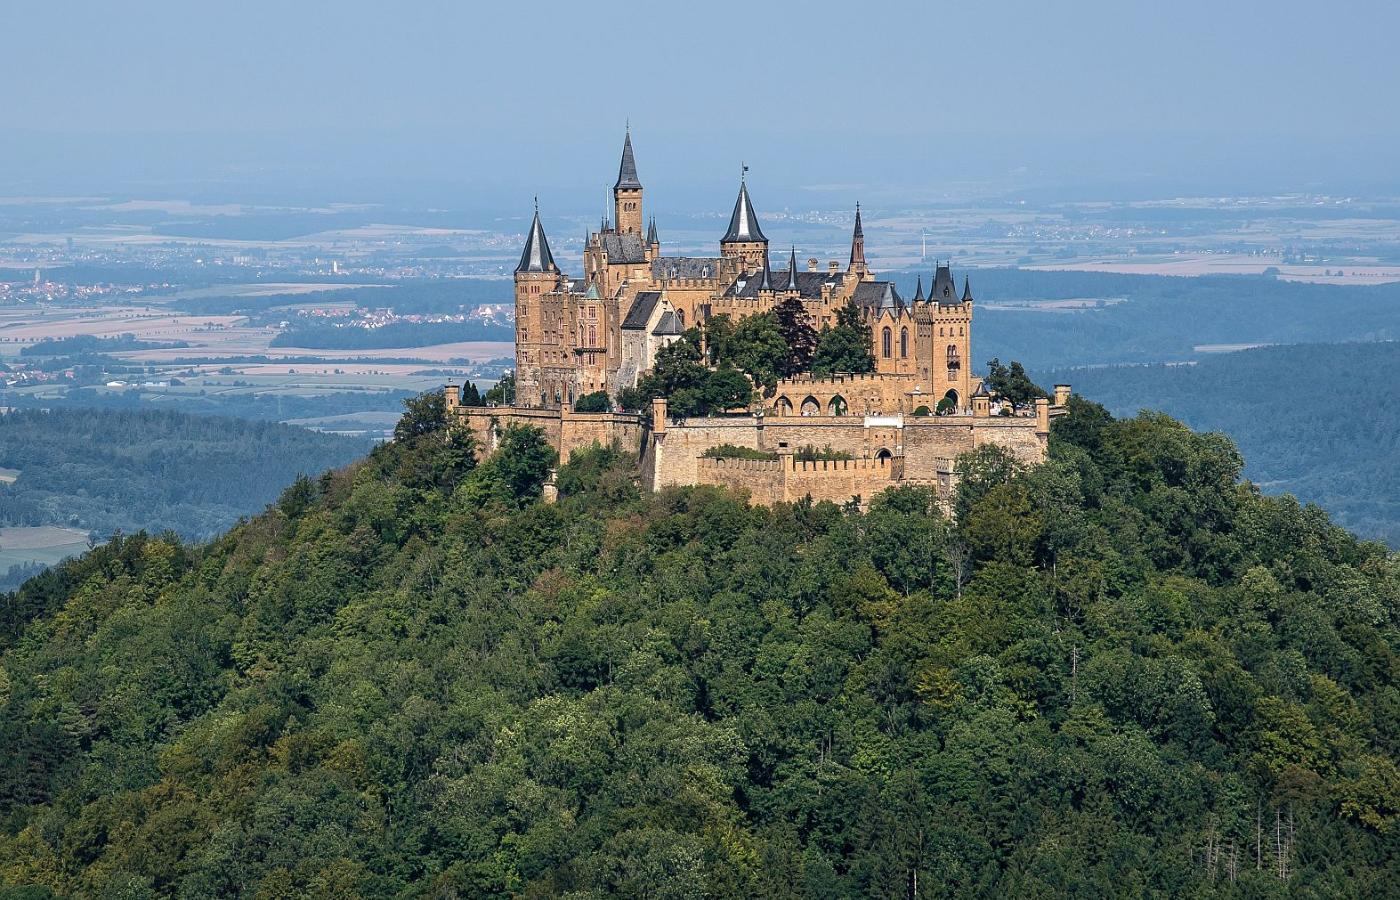 Zamek Hohenzollern, siedziba dynastii, niedaleko Hechingen w Jurze Szwabskiej. Widok obecny.